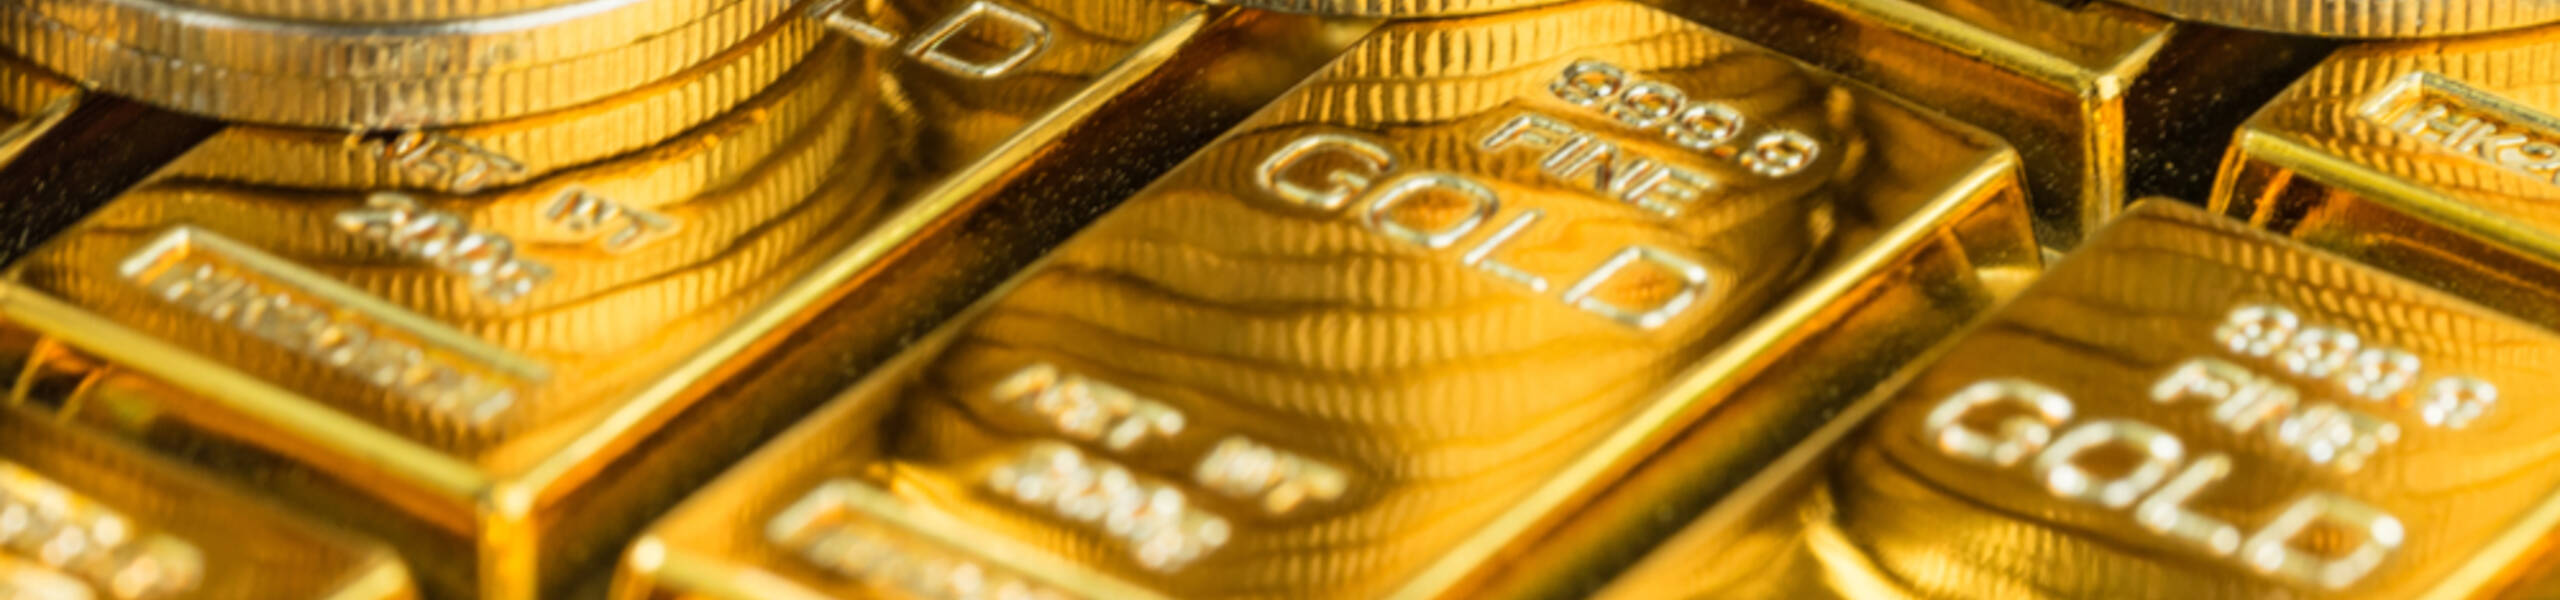 Harga emas mencapai sasaran yang dilanjutkan - Analisis - 01-03-2019